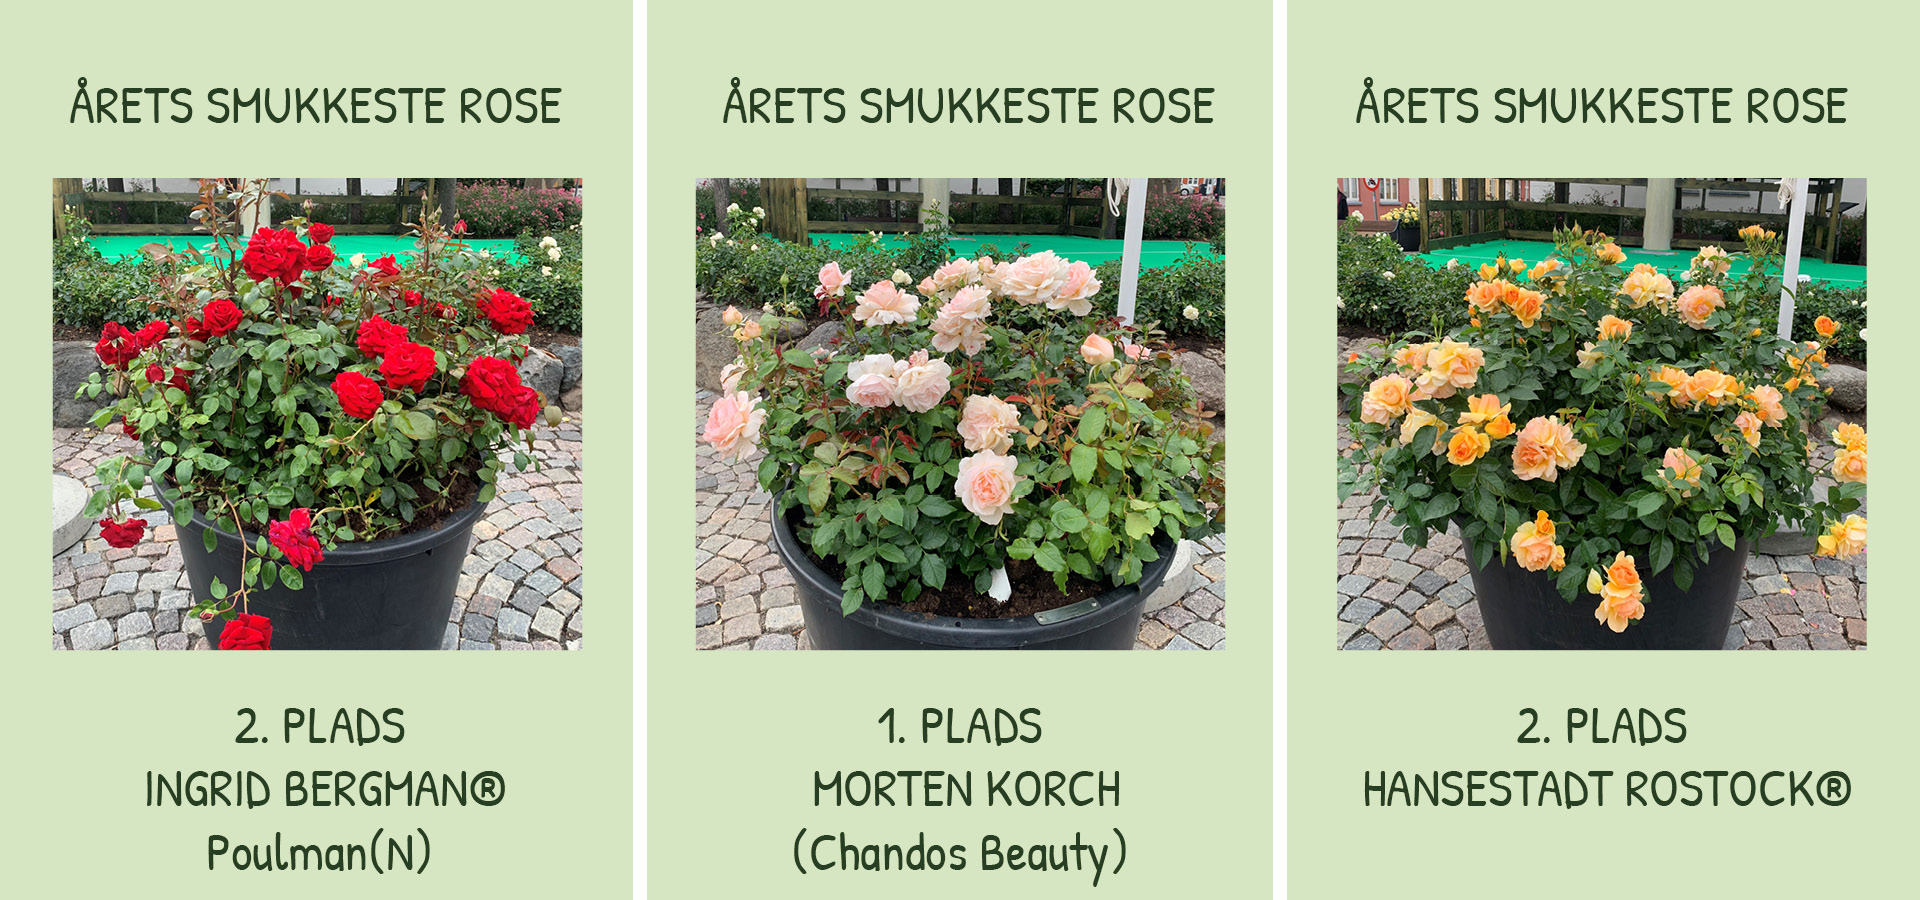 Her kan du se vinderne af Året smukkeste rose ved Rosenfestivalen